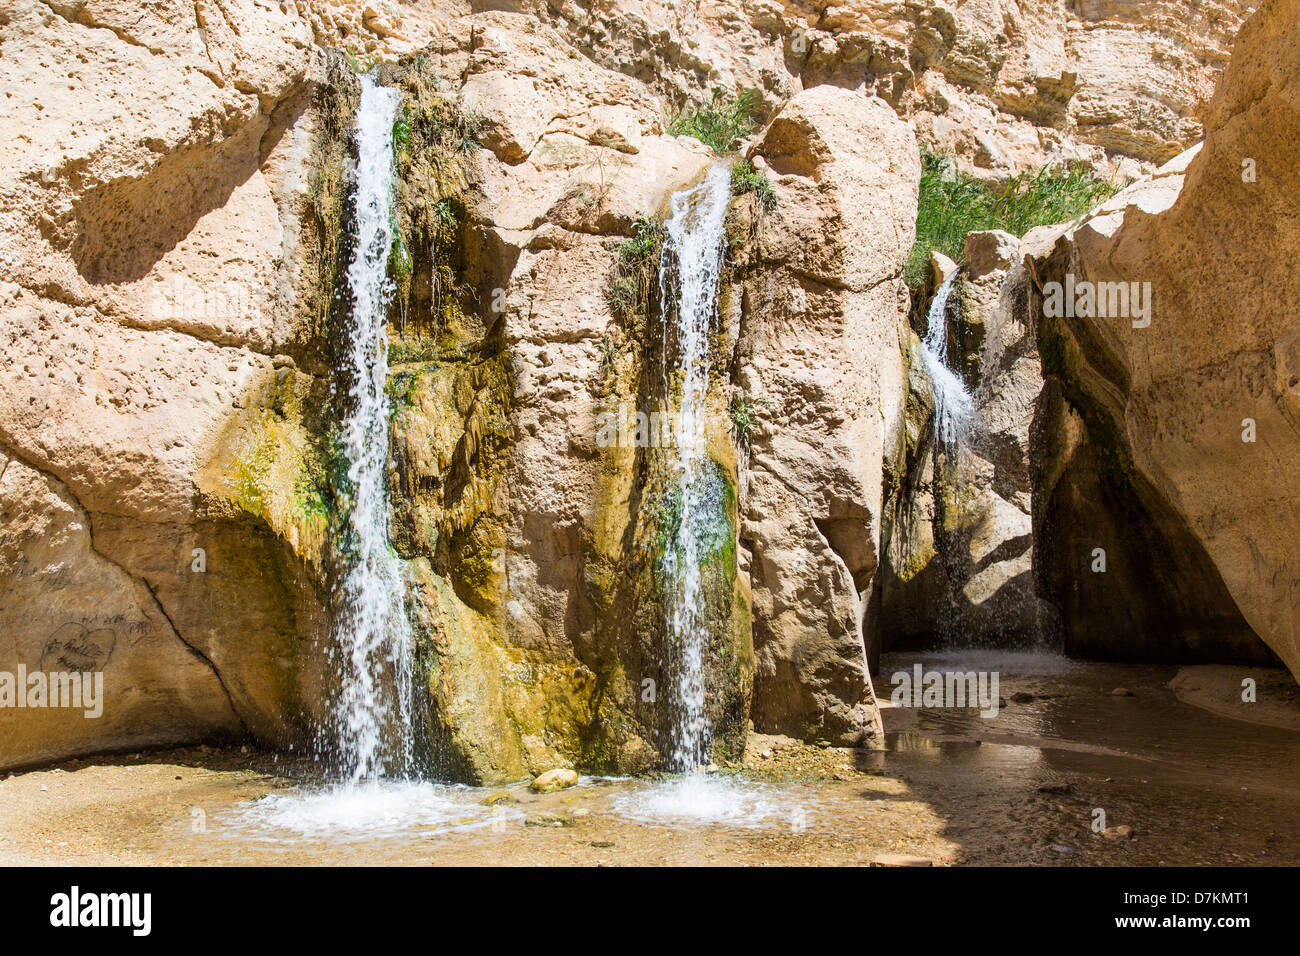 Waterfall in Tamerza Tunisia Stock Photo